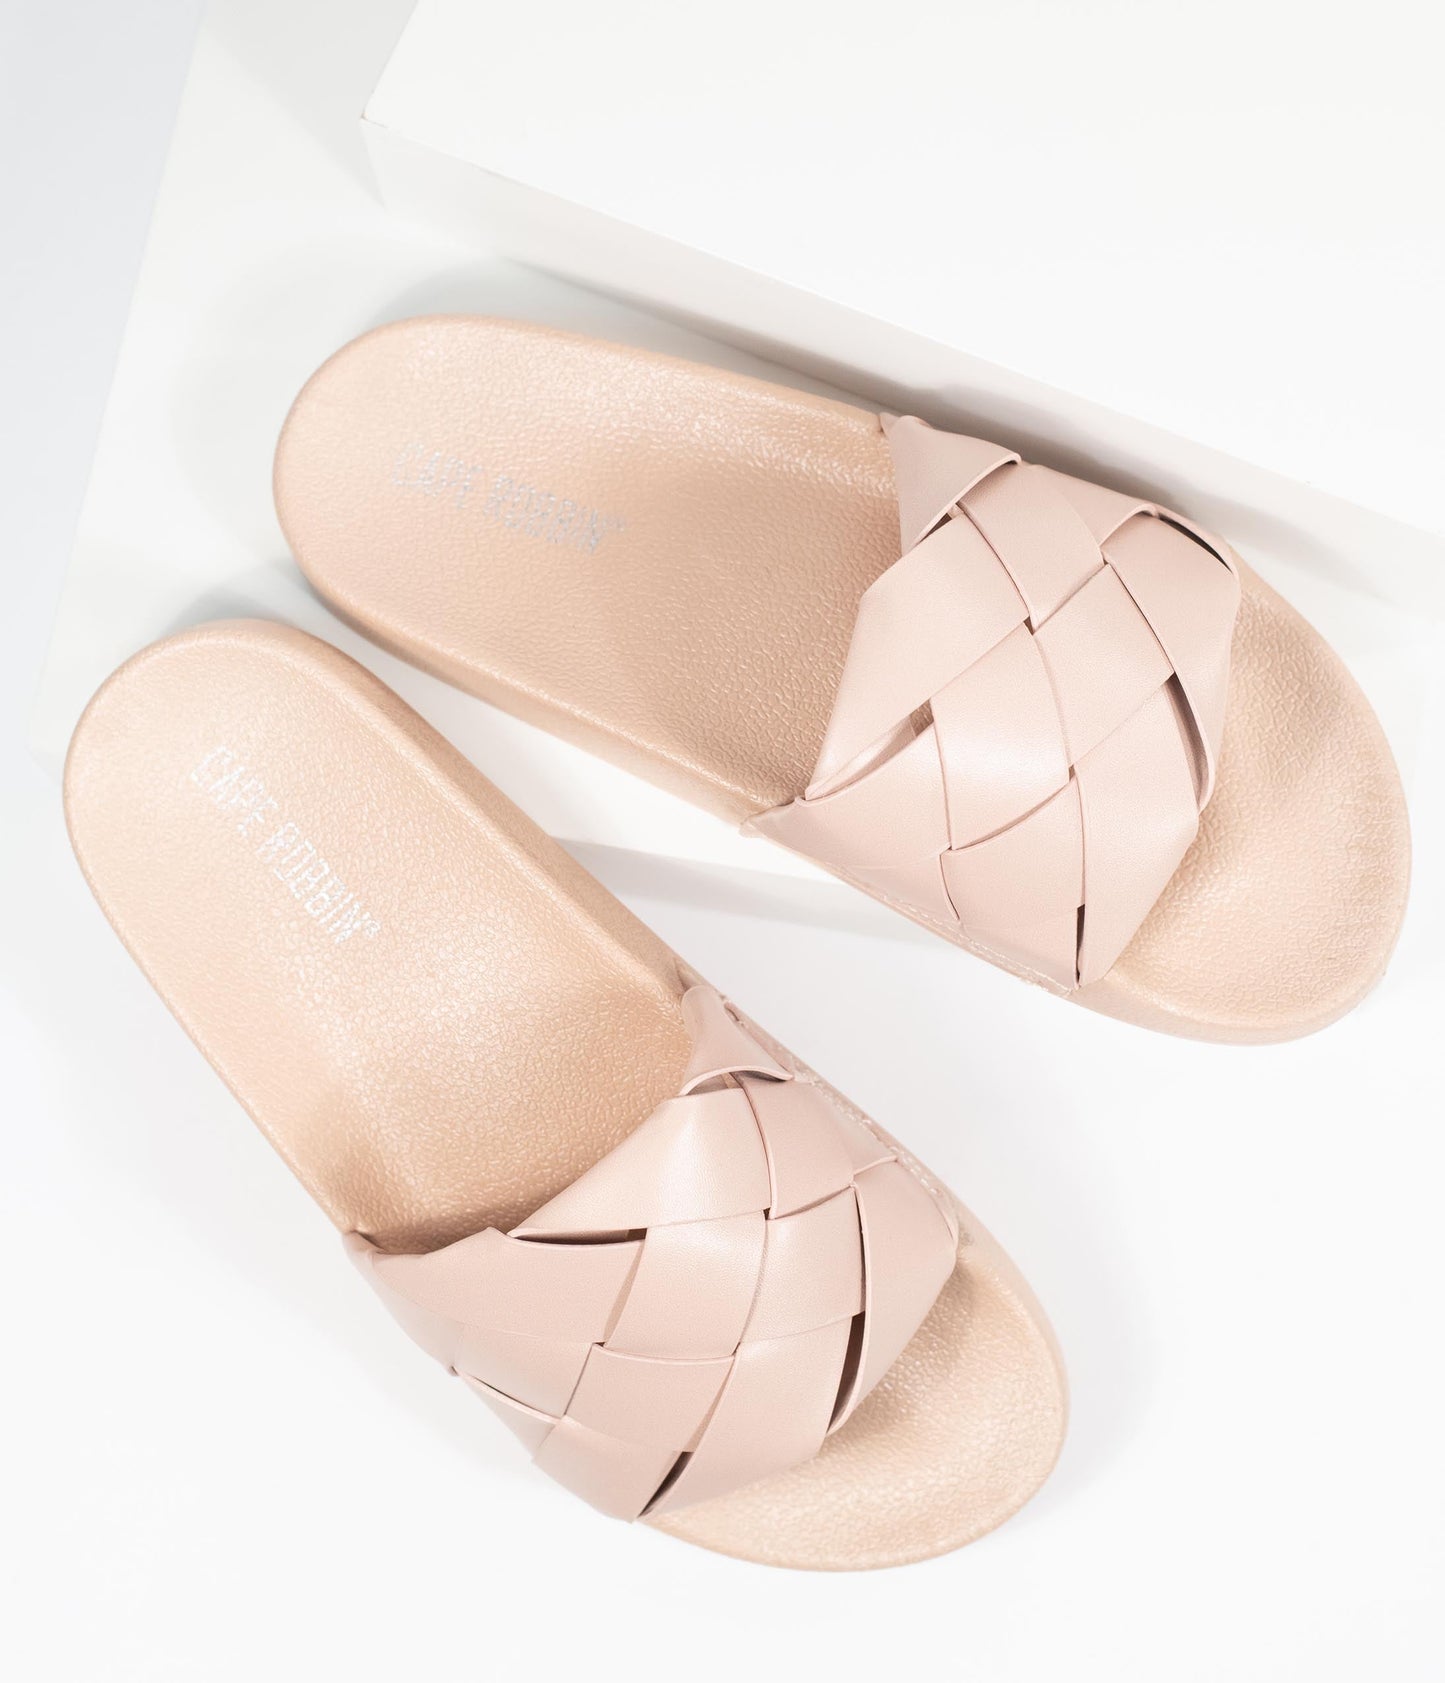 Blush Pink Leatherette Woven Slide Sandals - Unique Vintage - Womens, SHOES, SANDALS